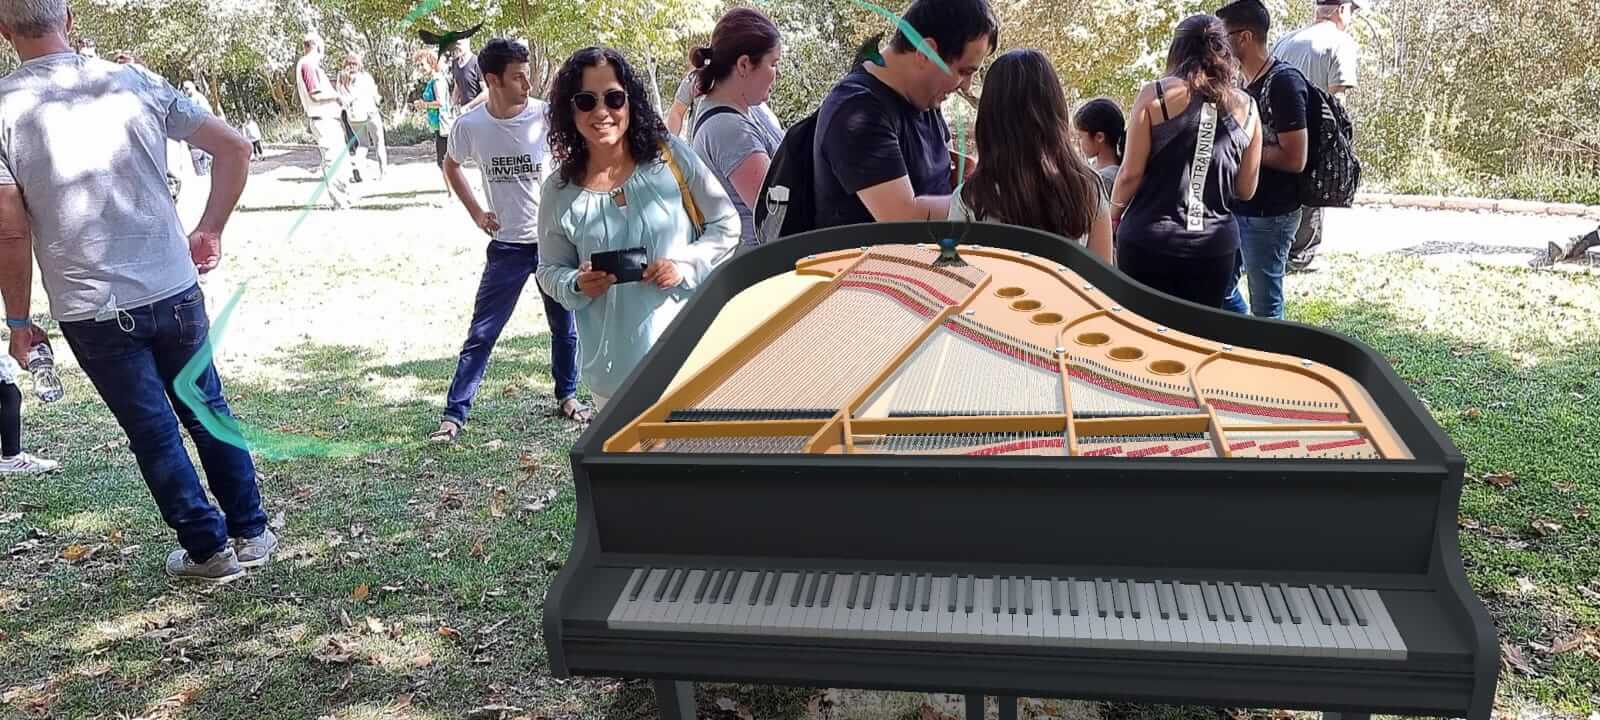 פסנתר בלב הטבע. תערוכה בגן הבוטני